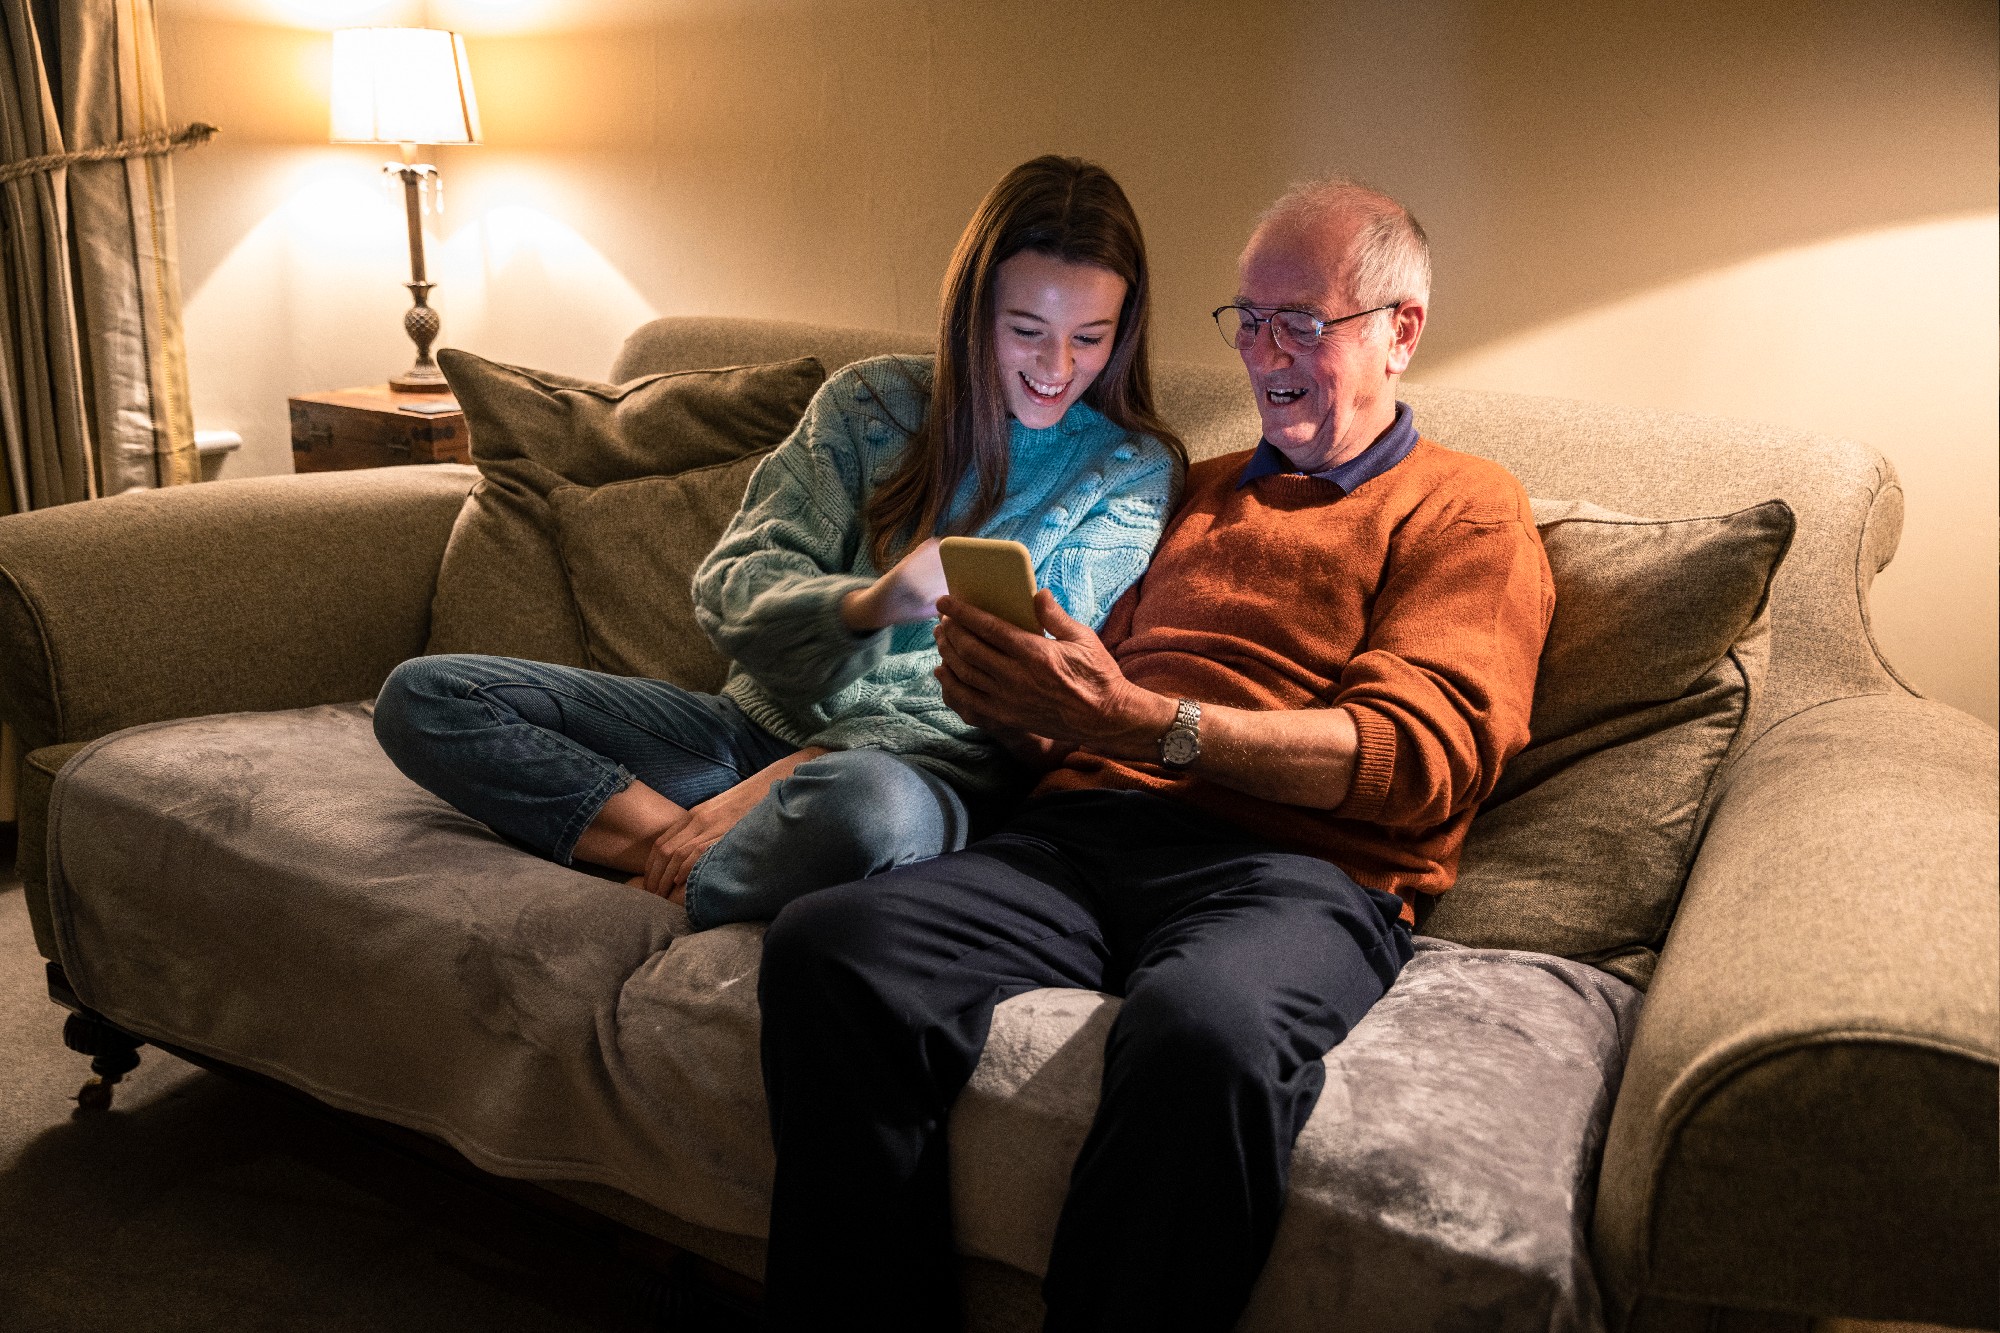 Dia dos avós: 6 apps para melhorar o estilo de vida dos idosos